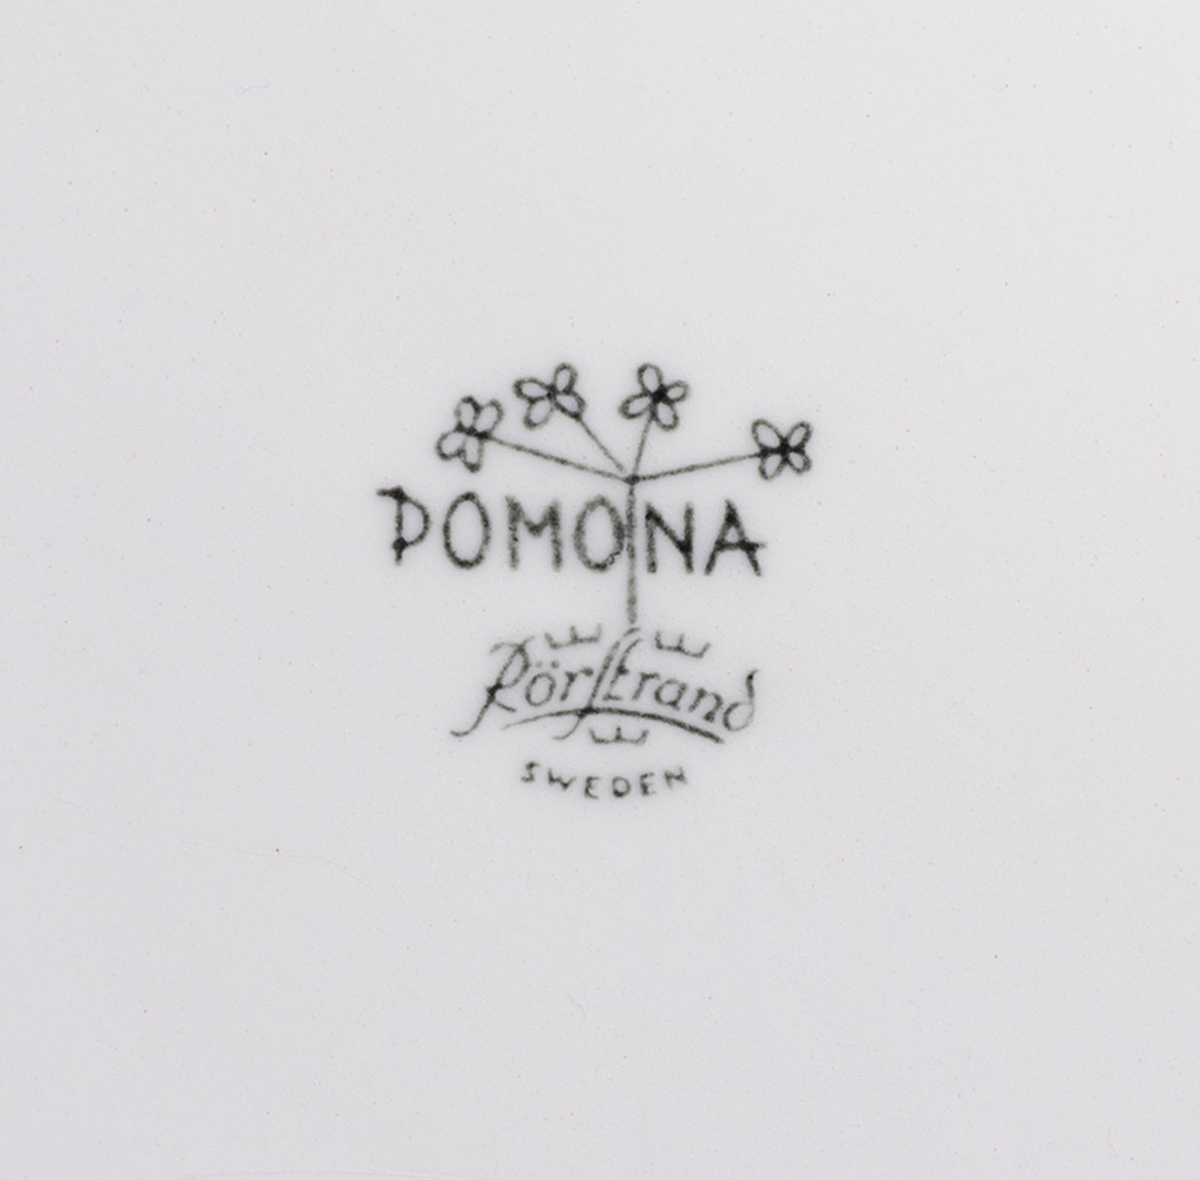 Tallrik av vitt porslin. Mönster: "Pomona" stiliserade grönsaker och örtkvistar. Design: Marianne Westman. Stämplad: "Pomona, Rörstrand, Sweden". Tillverkades 1956 - 1971.